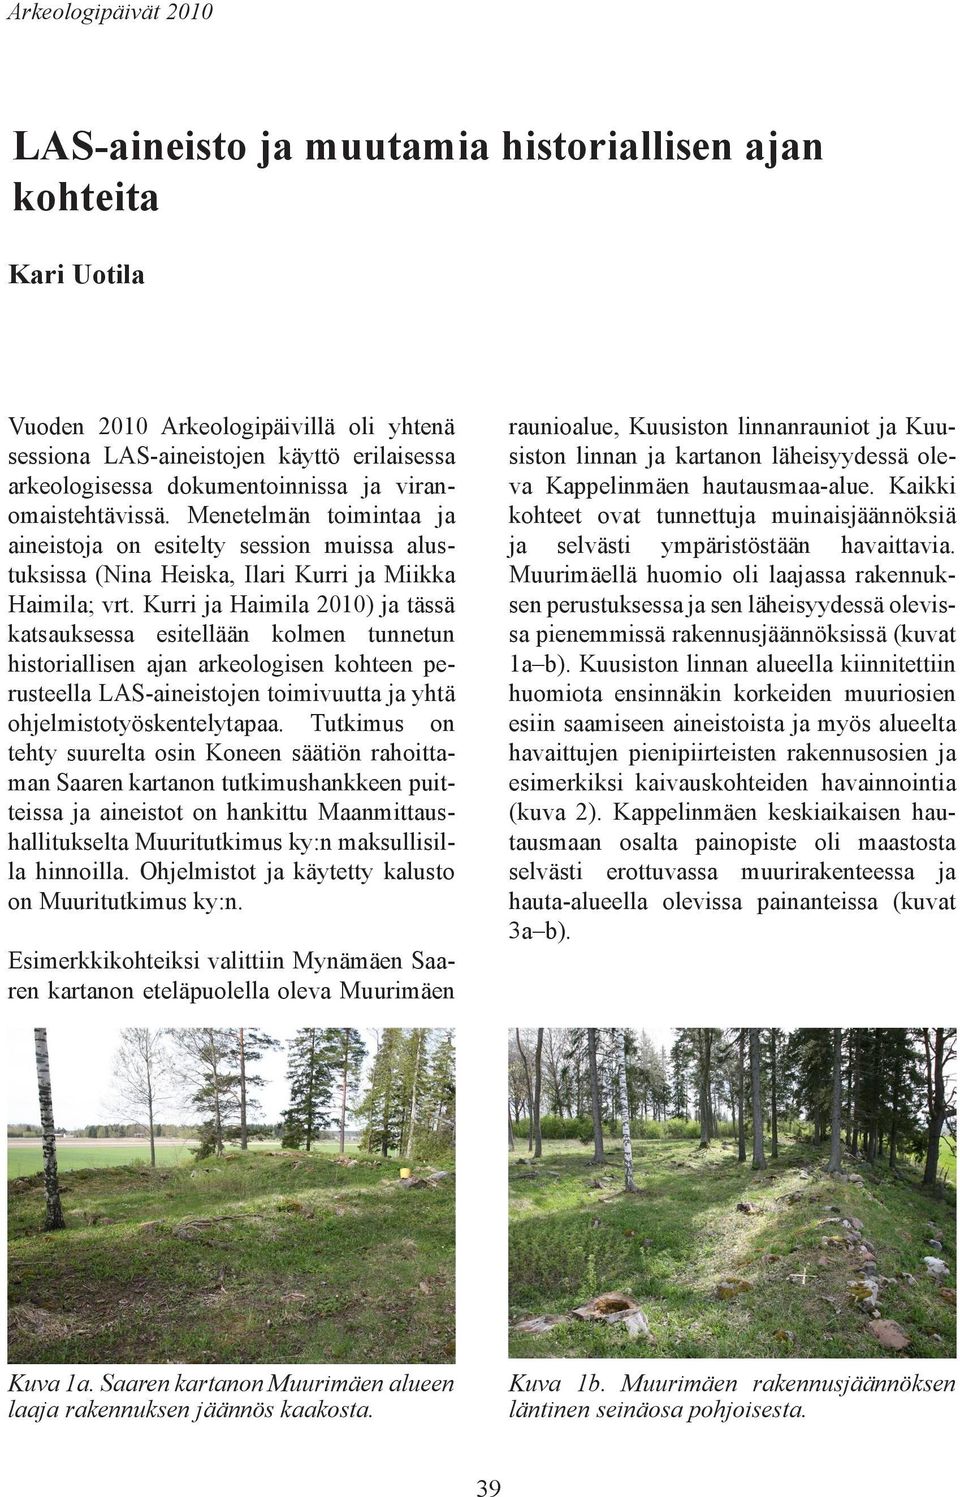 Kurri ja Haimila 2010) ja tässä katsauksessa esitellään kolmen tunnetun historiallisen ajan arkeologisen kohteen perusteella LAS-aineistojen toimivuutta ja yhtä ohjelmistotyöskentelytapaa.